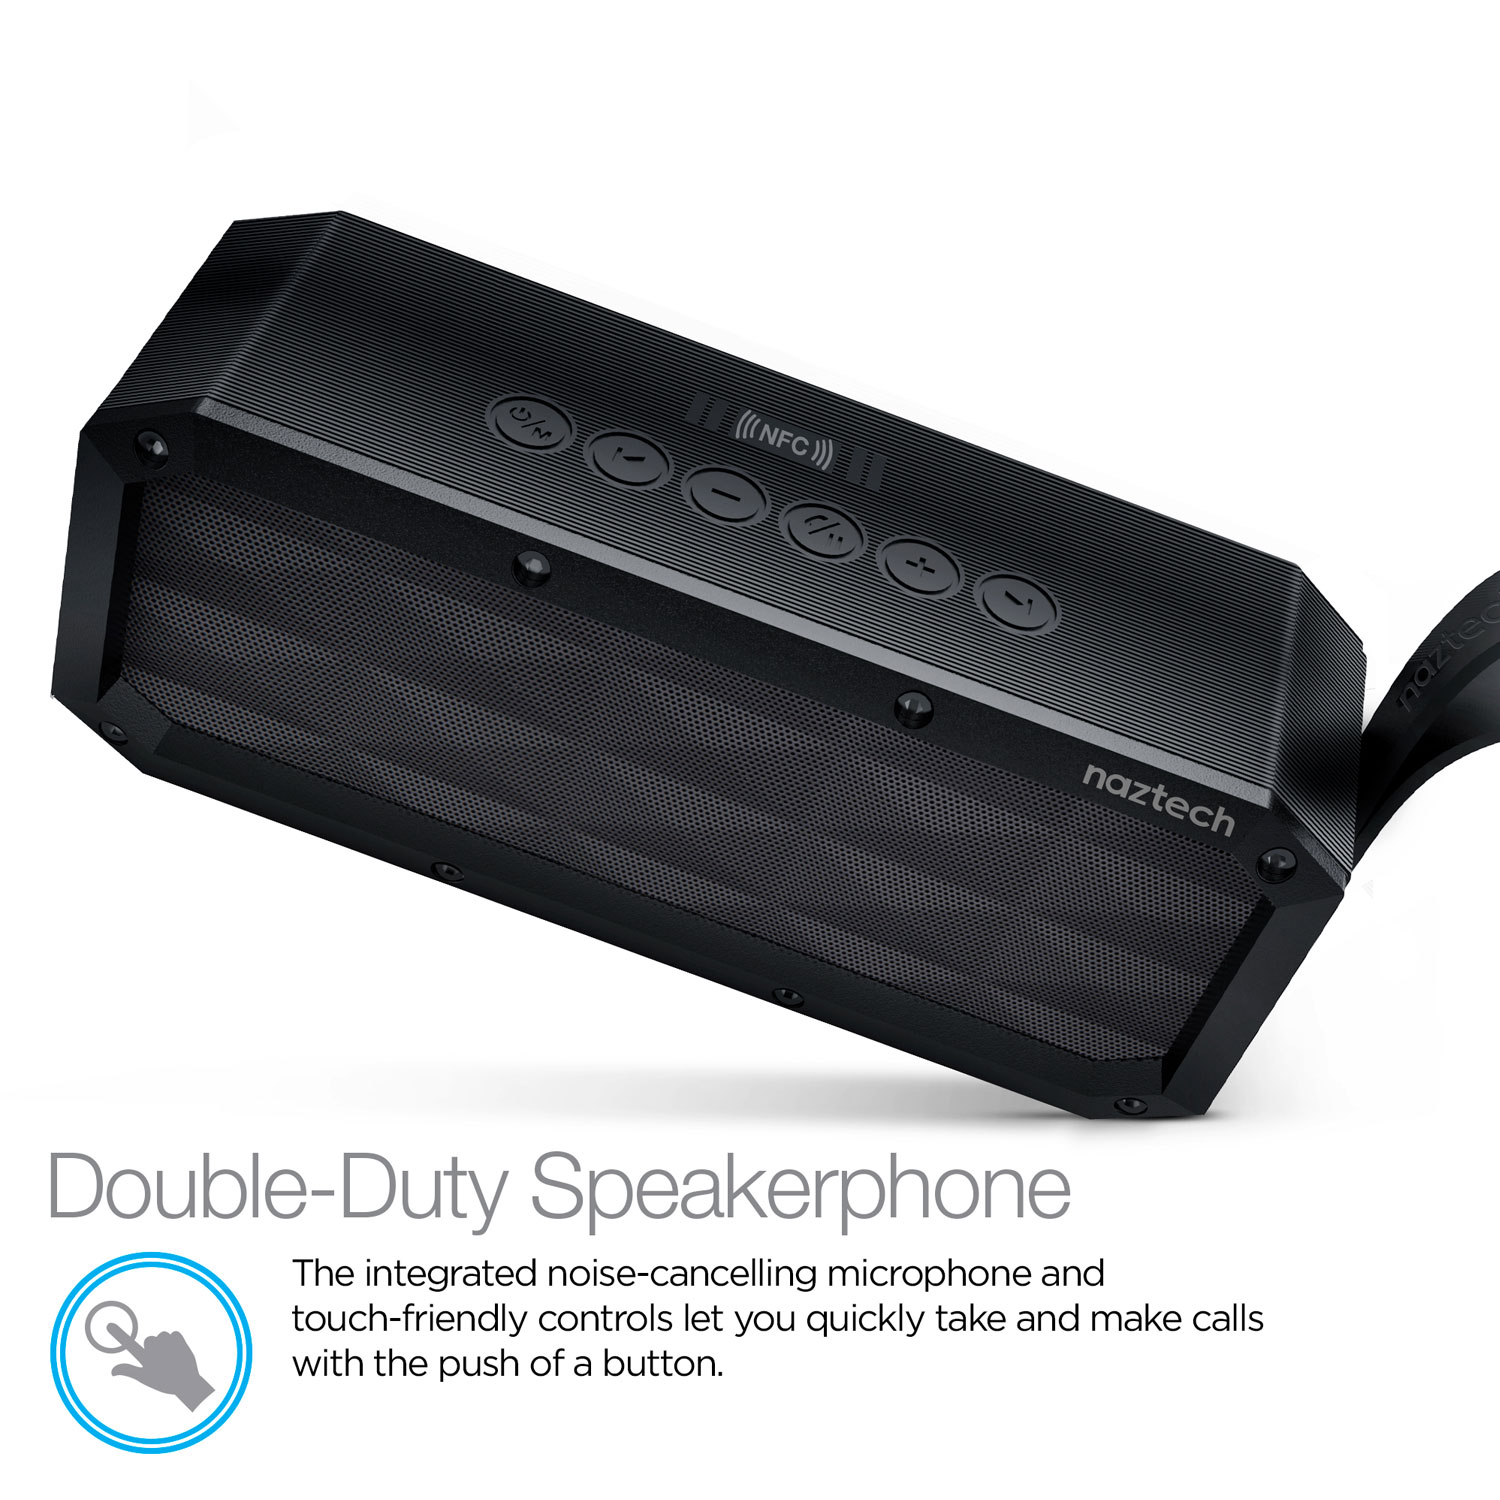 SoundBrick Wireless Speaker